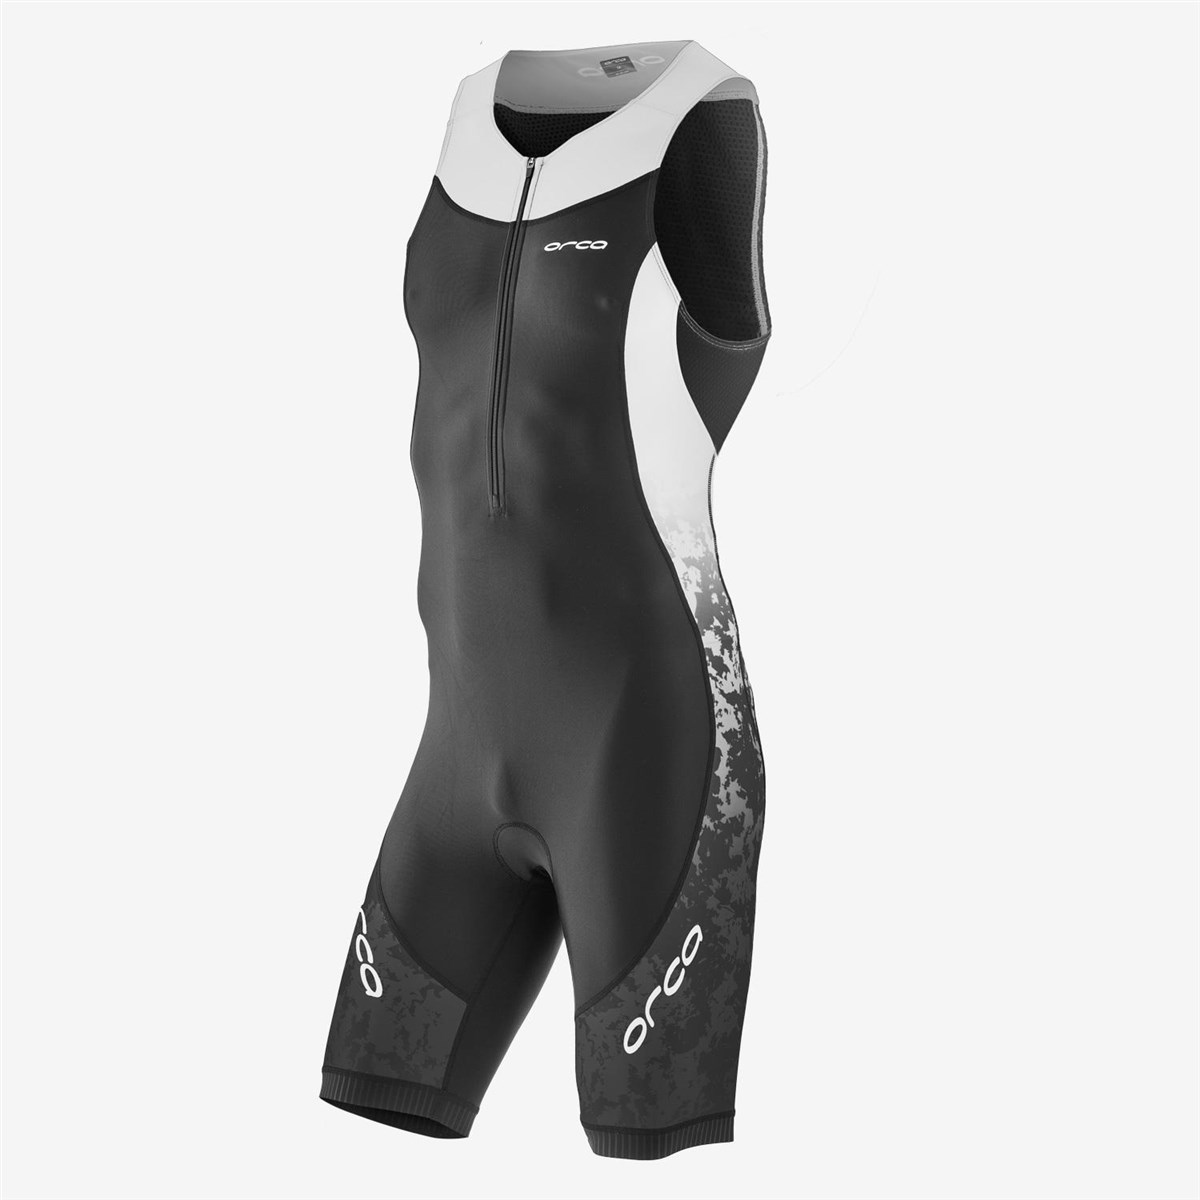 Orca Core Race Suit product image